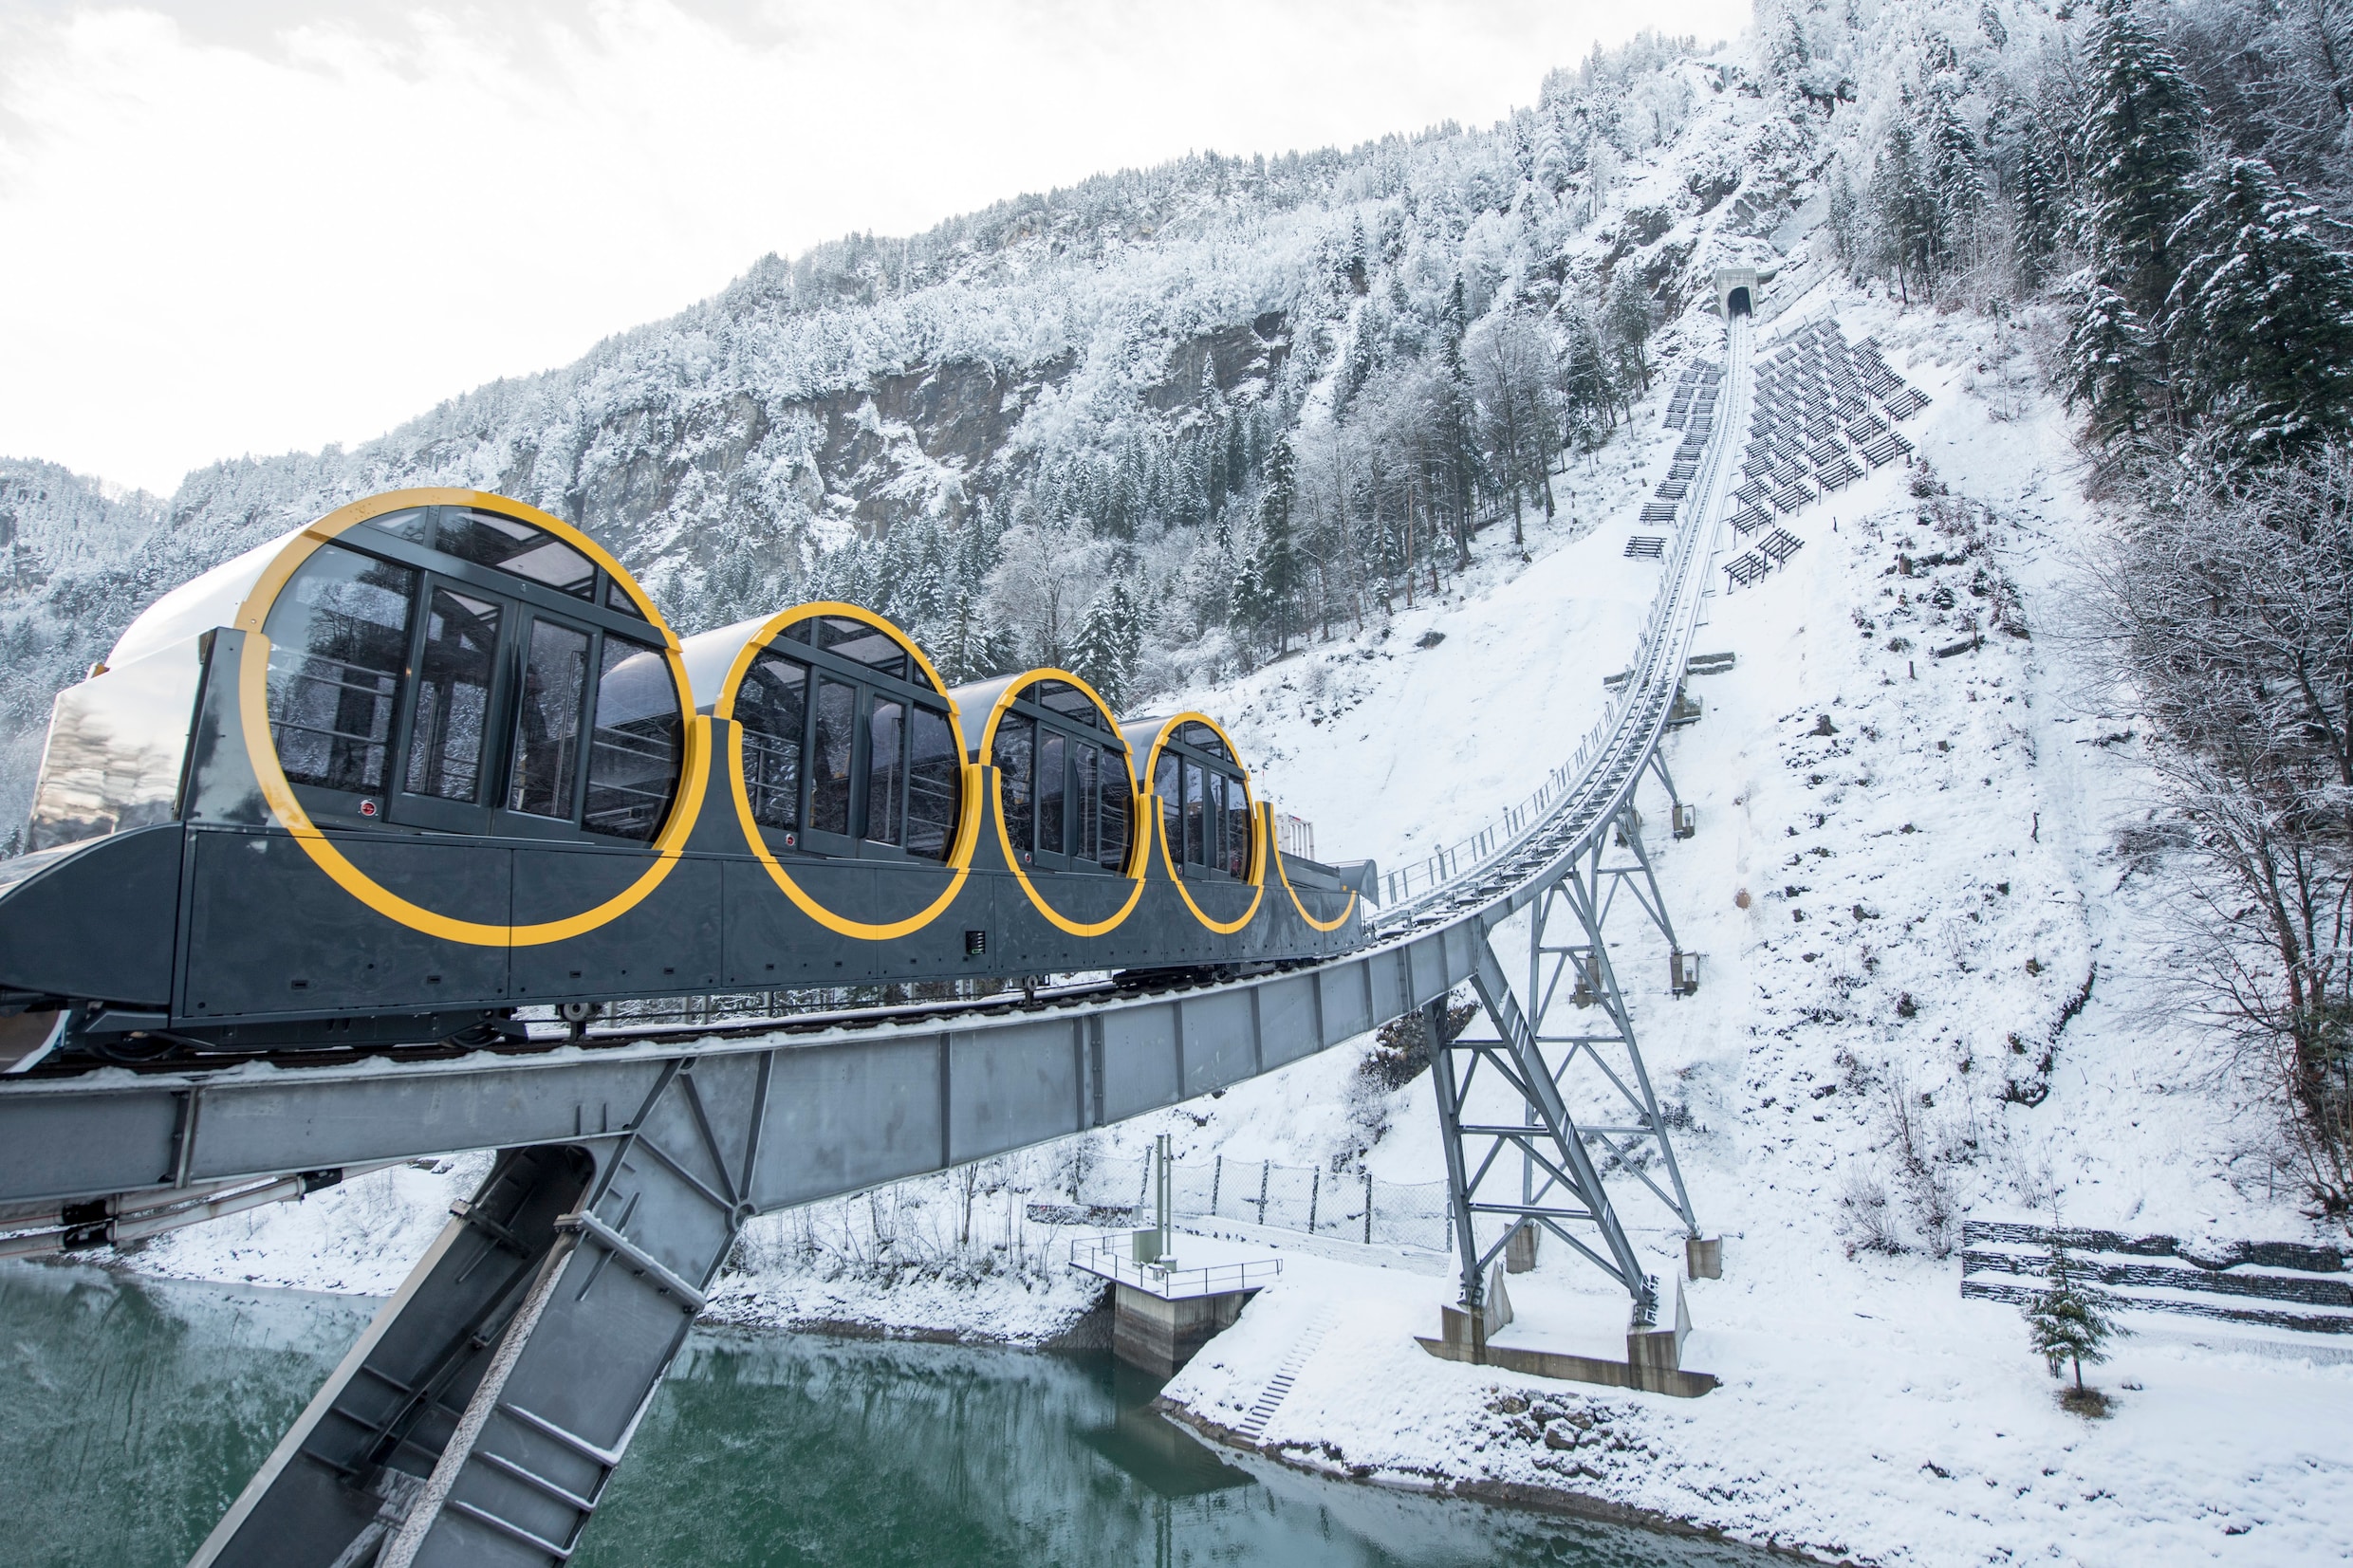 Steilste kabelspoorweg opent in Zwitserland